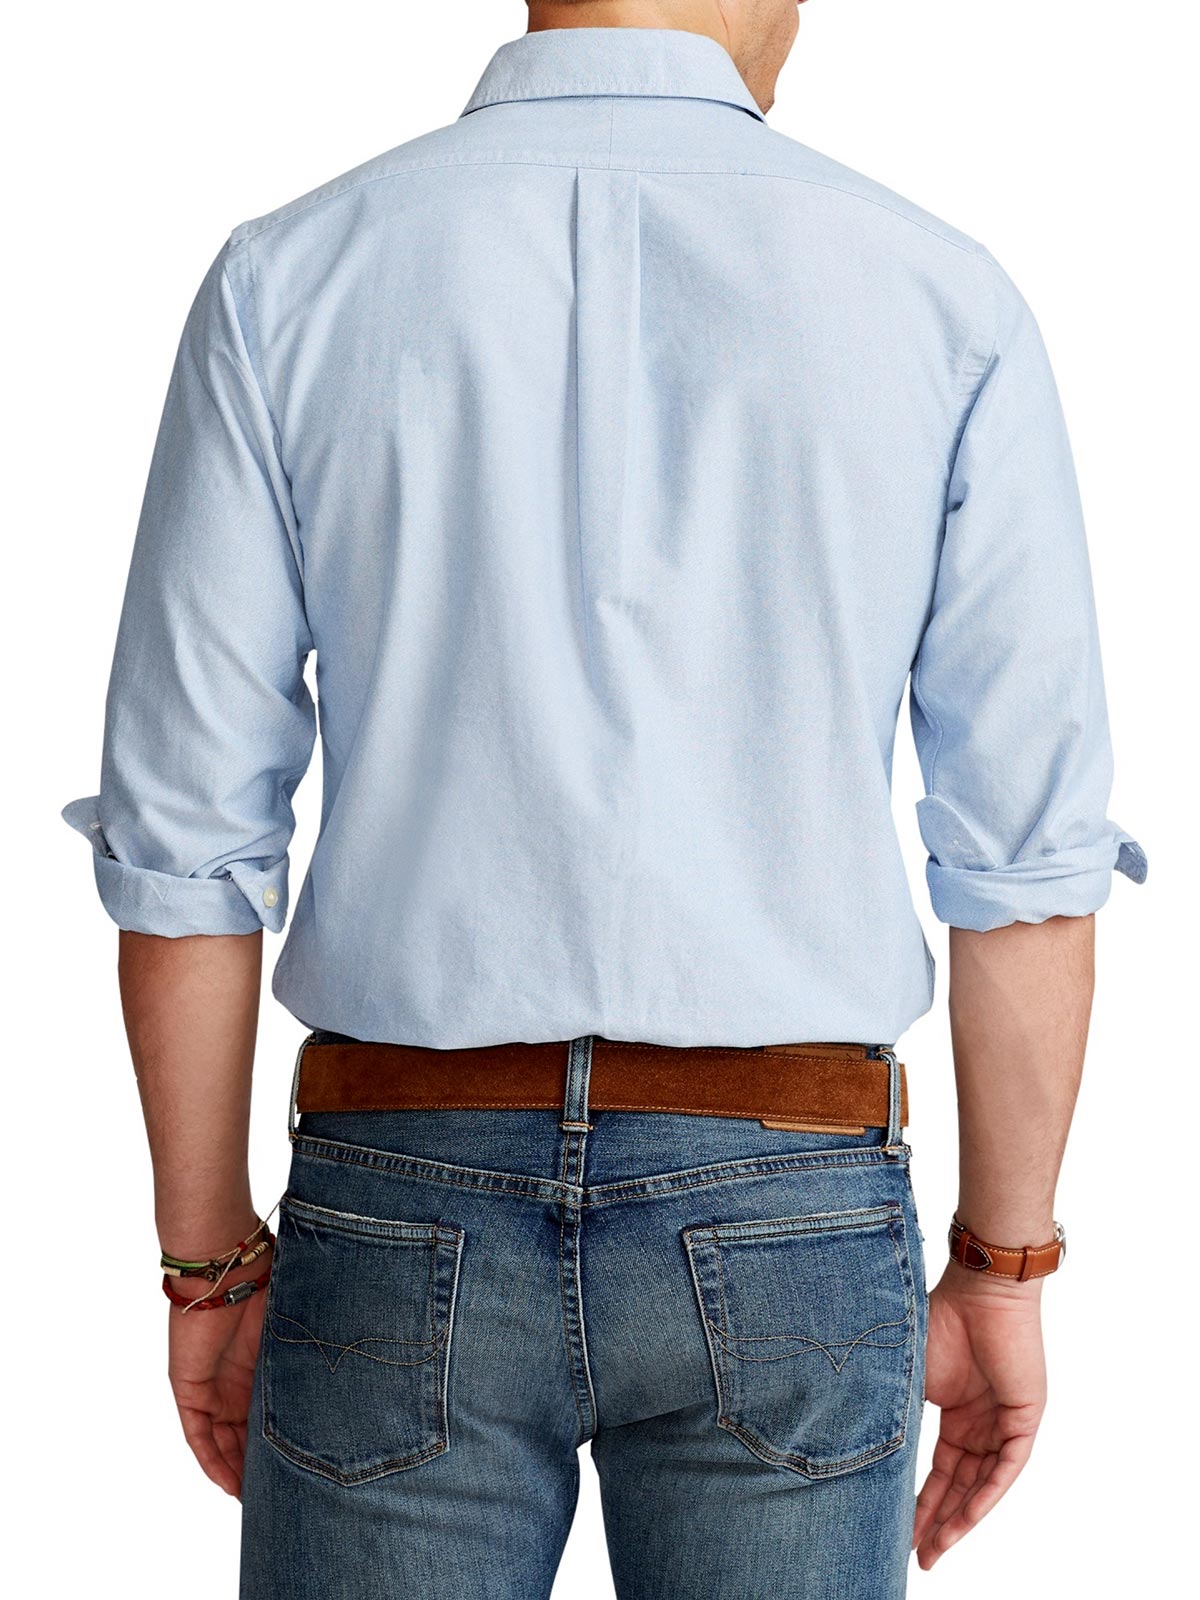 Immagine di POLO RALPH LAUREN | Camicia Oxford Uomo Custom Fit